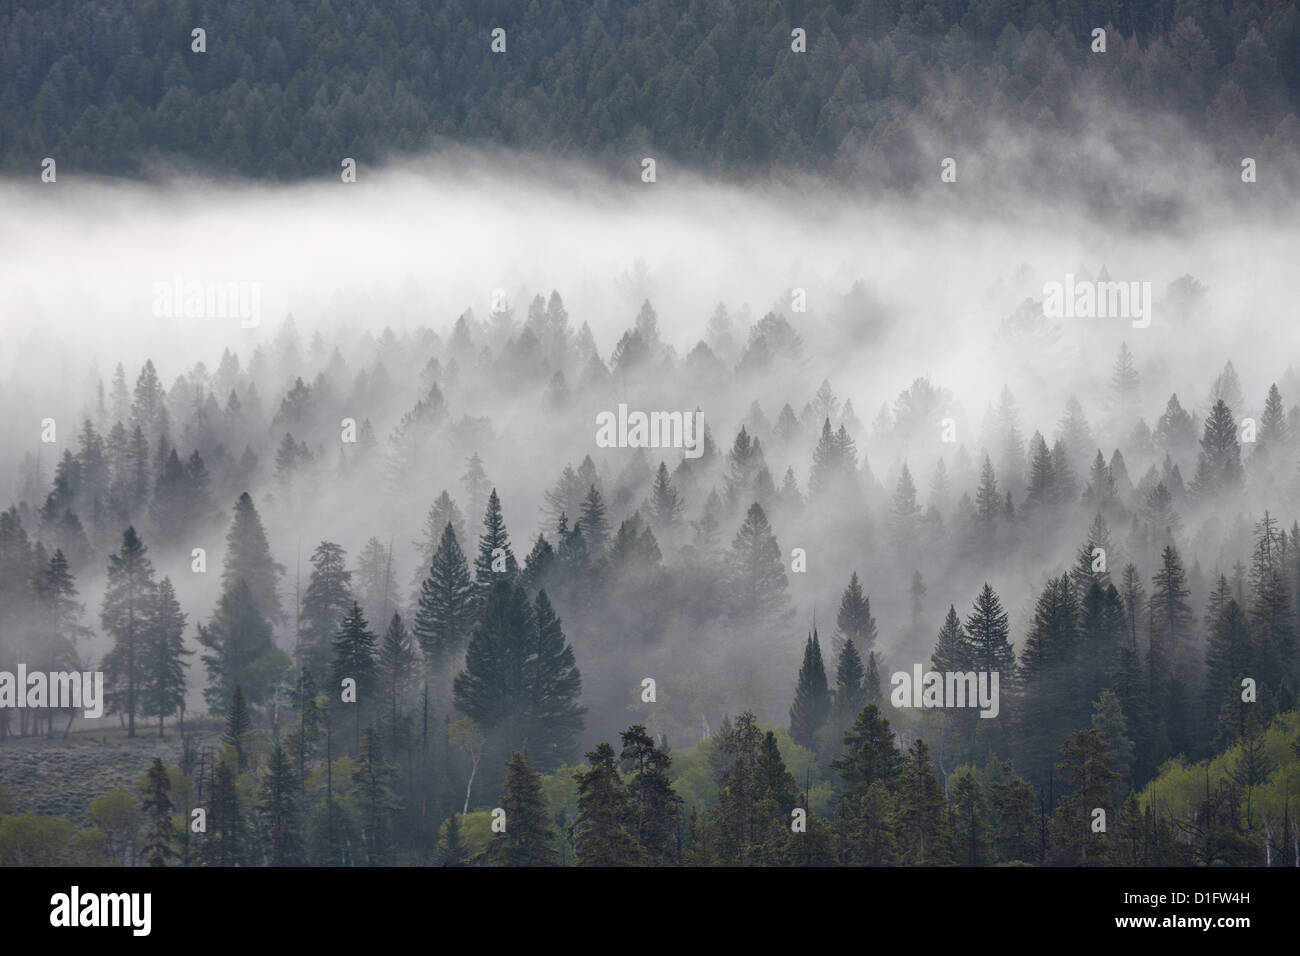 Mélange de brouillard avec les arbres à feuilles persistantes, le Parc National de Yellowstone, Wyoming, États-Unis d'Amérique, Amérique du Nord Banque D'Images